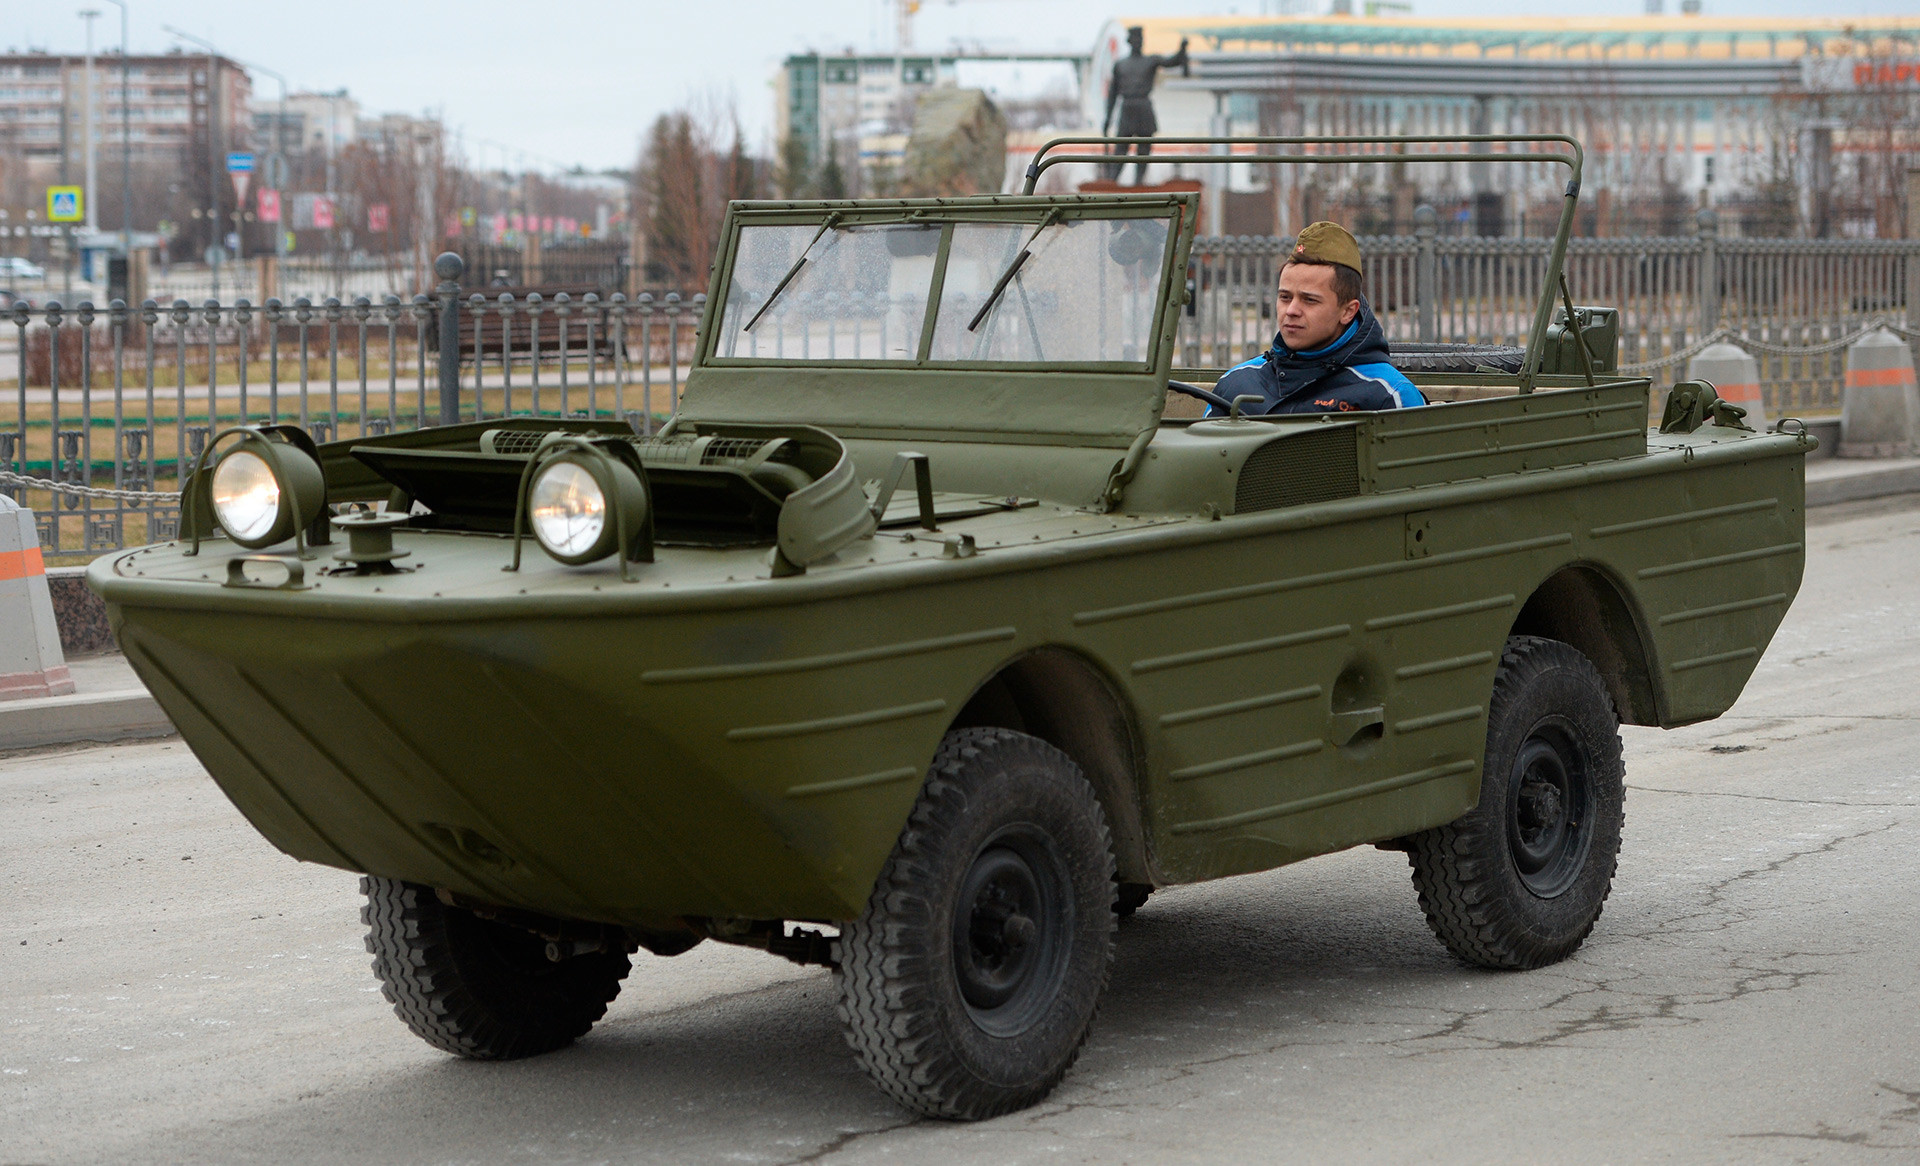  Плаващият автомобил ГАЗ-46 на подготовка за военния церемониал във връзка 73-годишнината от успеха във Великата отечествена война в гр. Верхная Пимша в Свредловска област. 